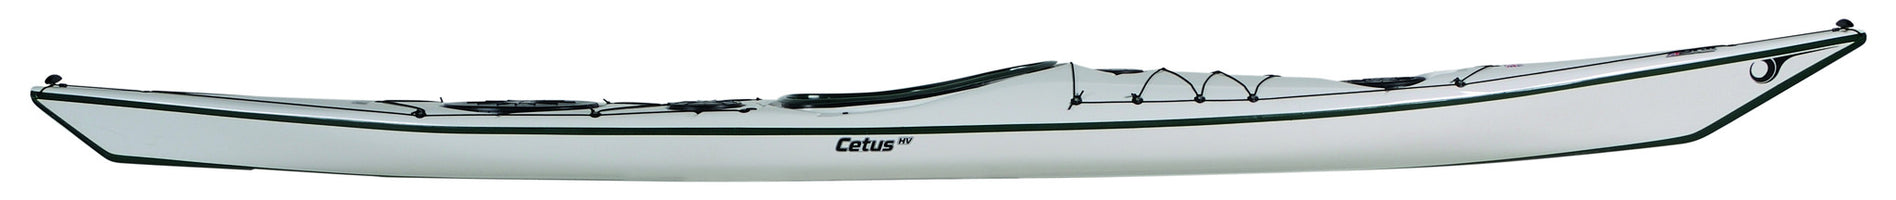 P & H Cetus (three sizes)